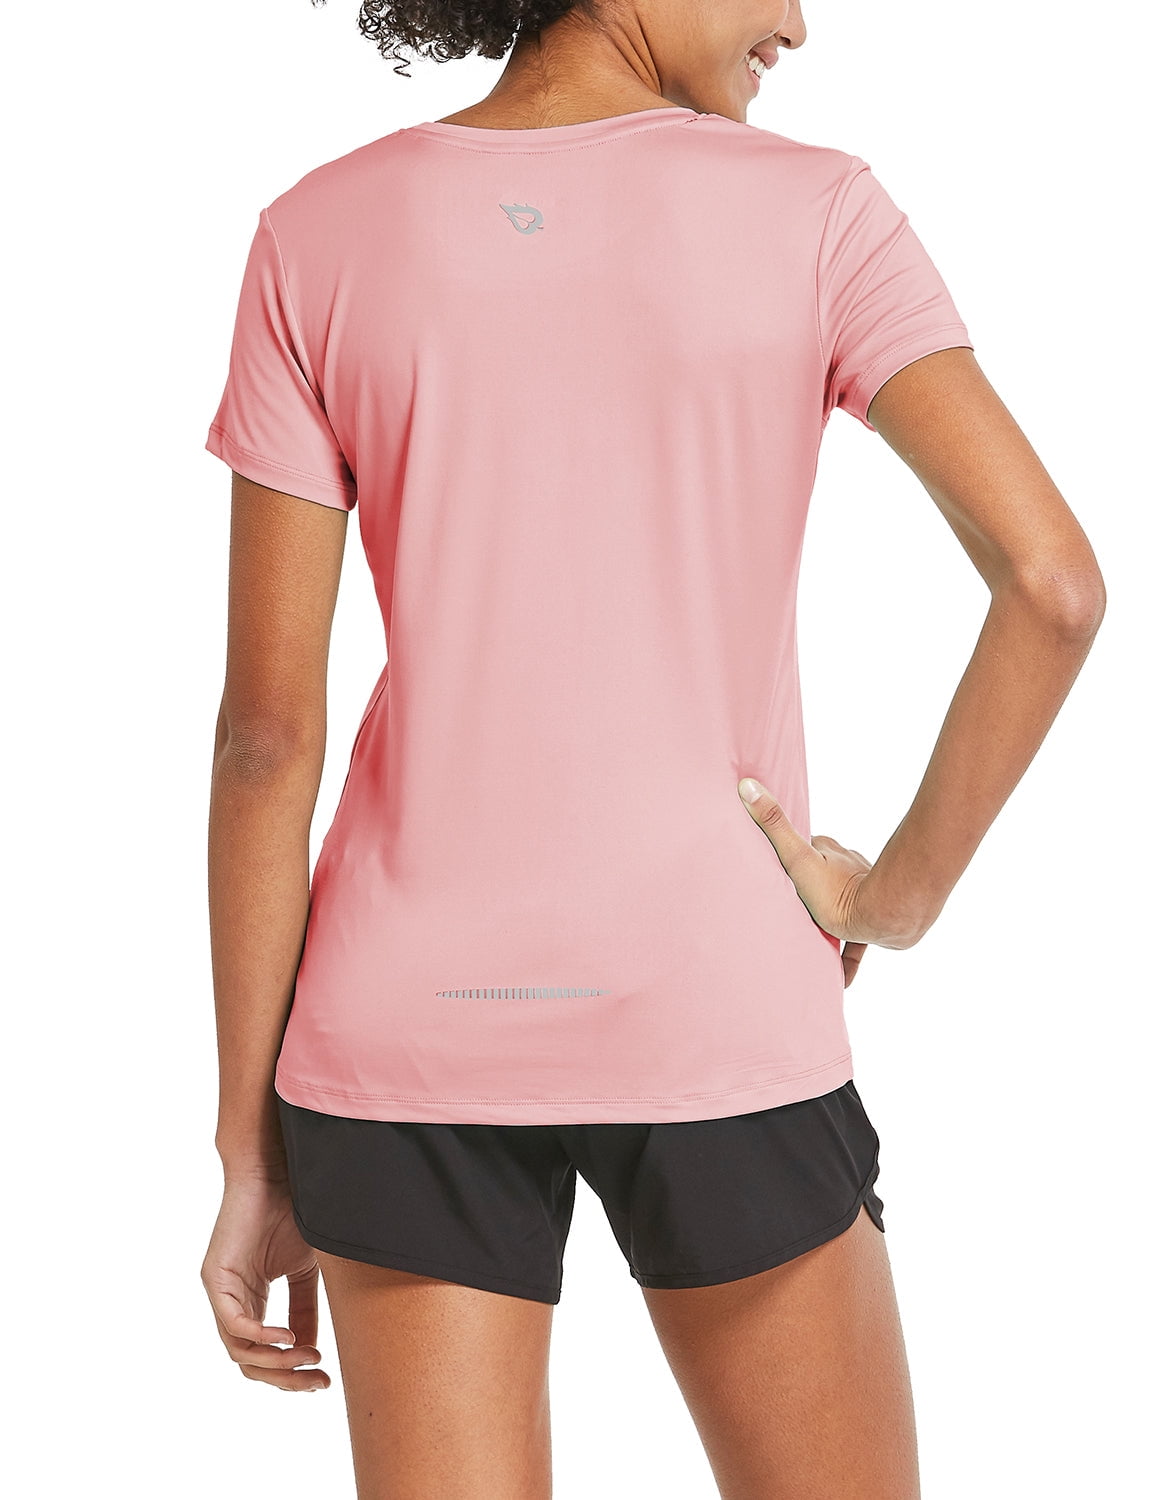 Baleaf Outdoor Running Workout Short-Sleeve T-Shirt